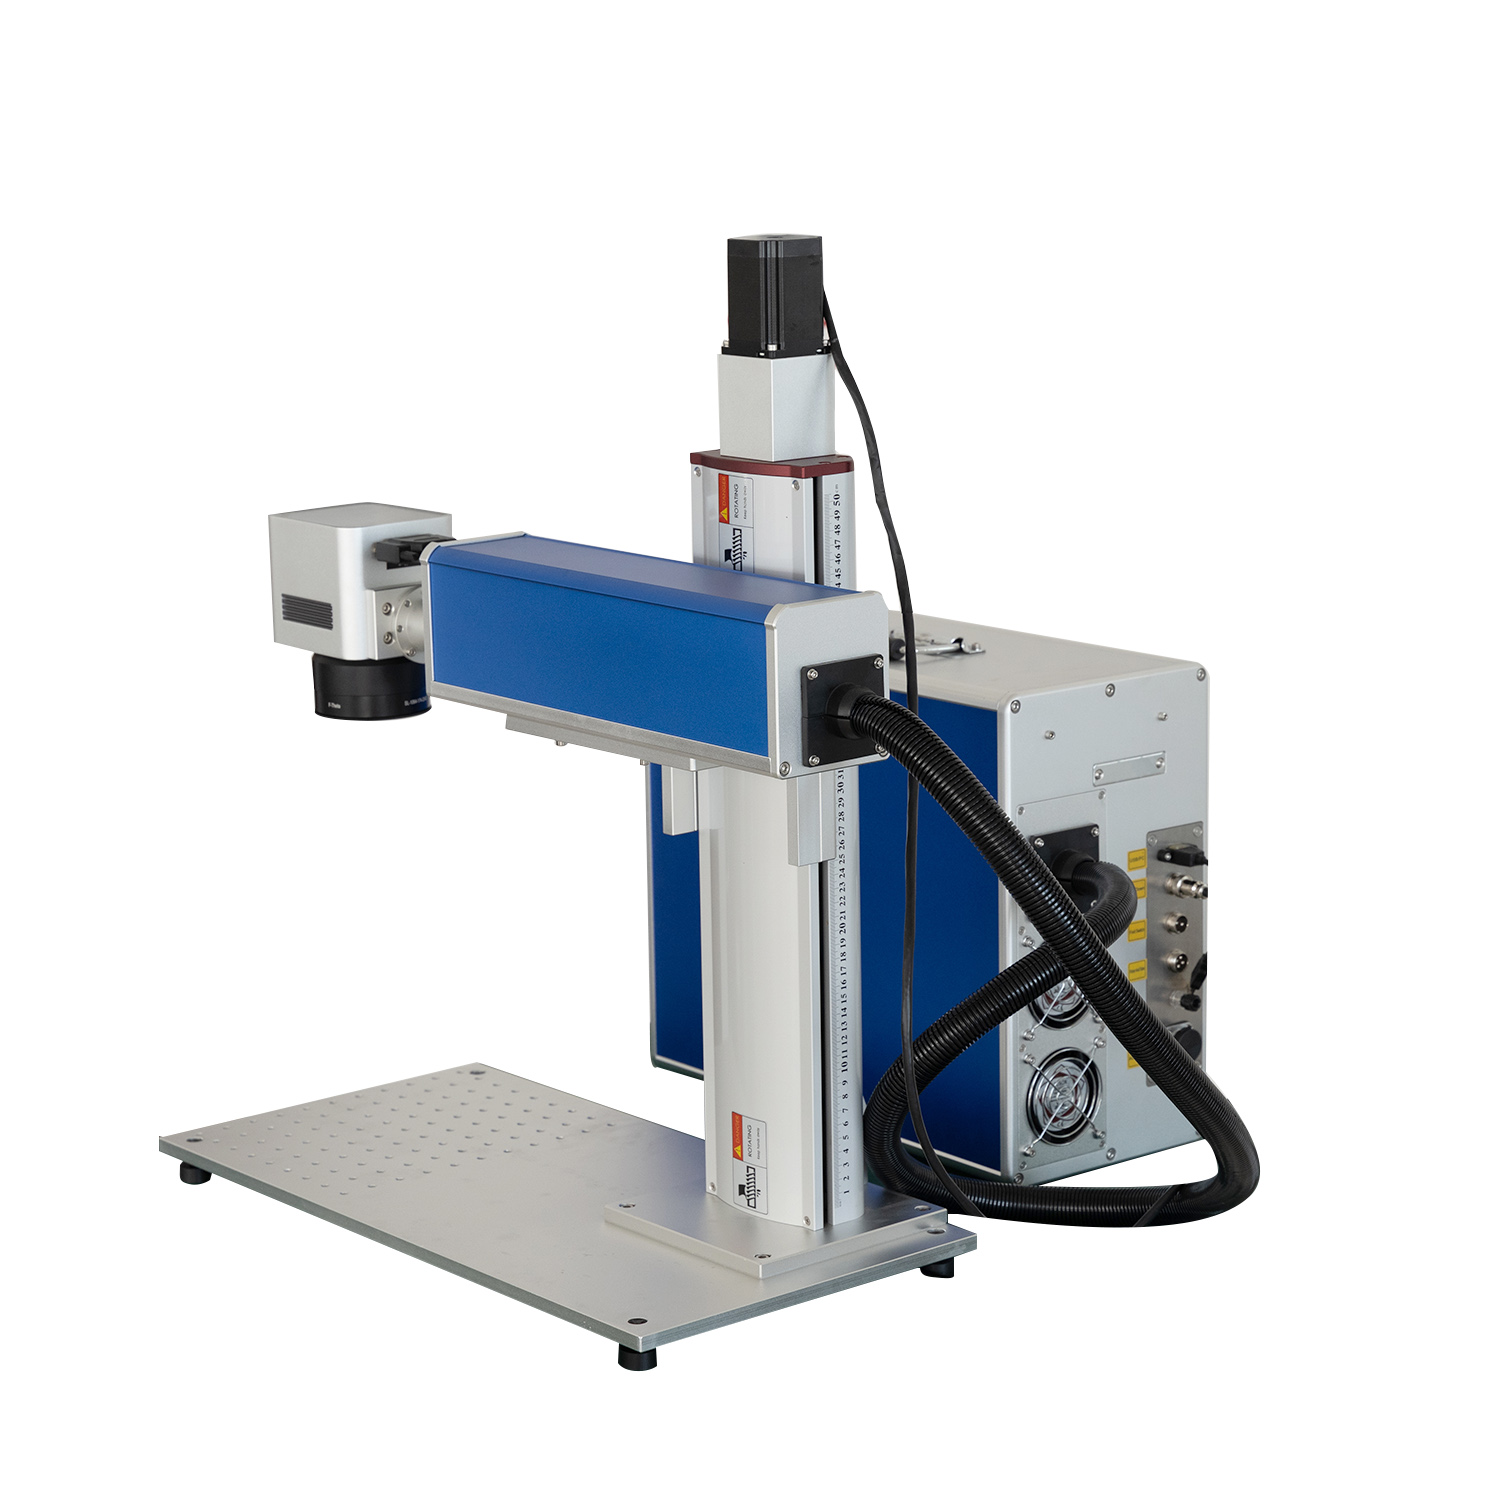 JPT Faserlaser 50W 60W 80W Laserbeschriftungsmaschine Tiefgravur Schneiden EZCAD3 2.5D 3D Faserlasergravierer